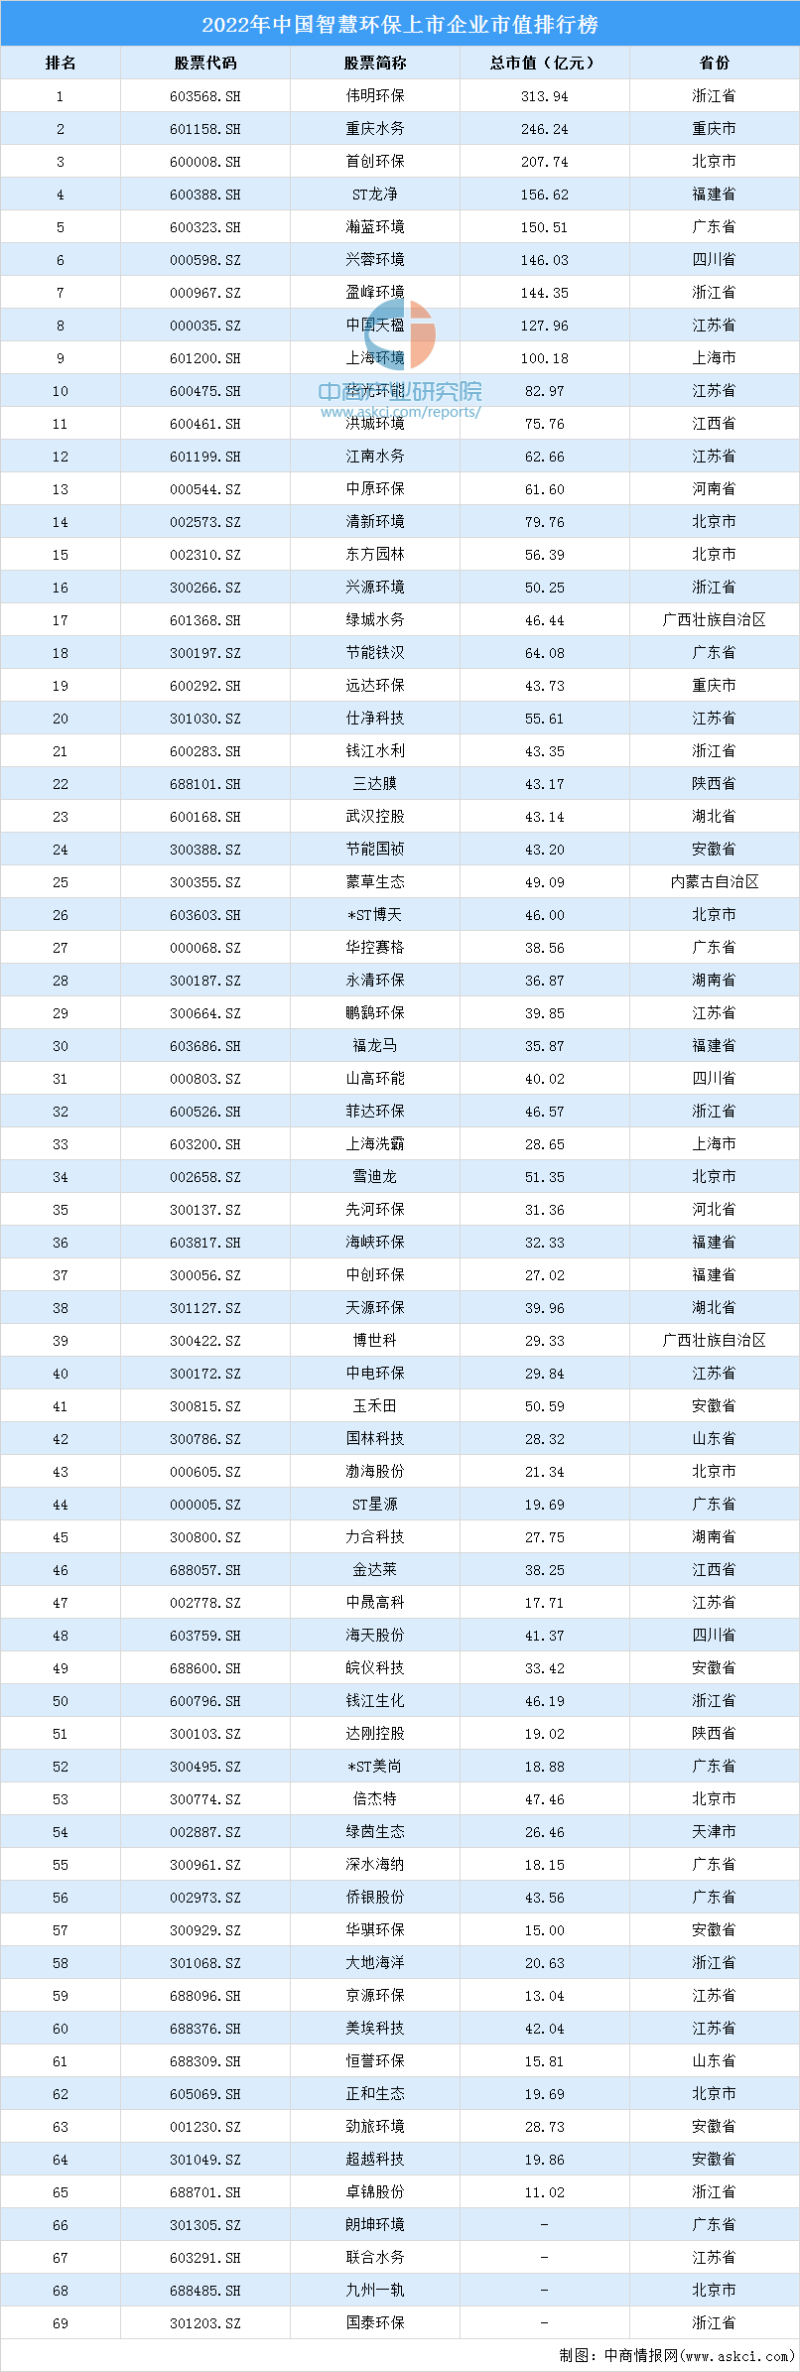 中国智慧环保行业上市企业市值排行榜